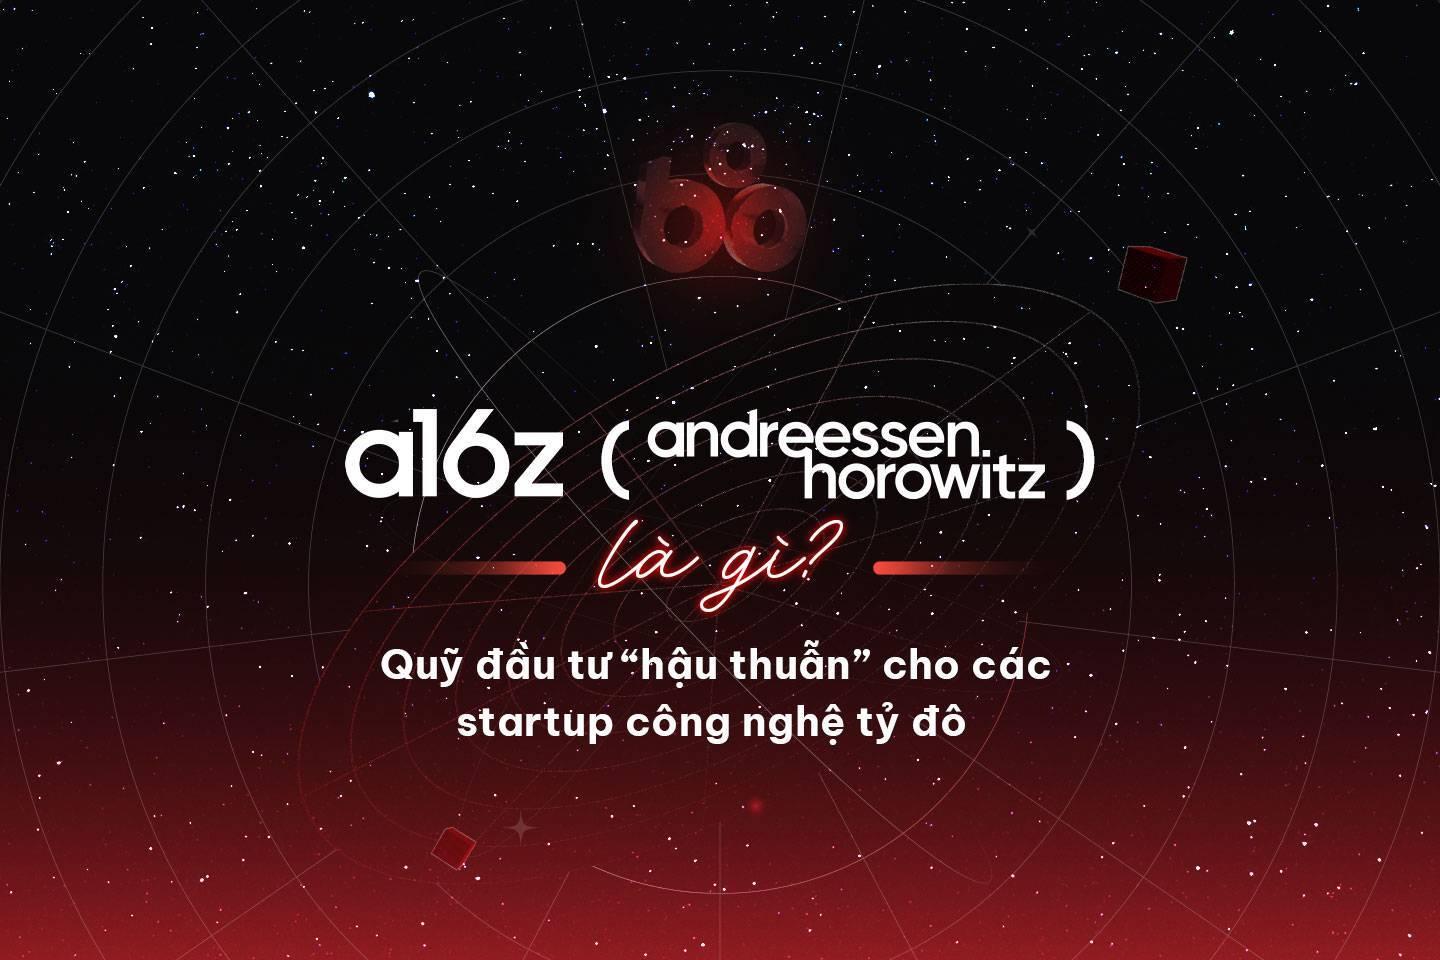 a16z-andreessen-horowitz-la-gi-quy-dau-tu-hau-thuan-cho-cac-startup-cong-nghe-ty-do